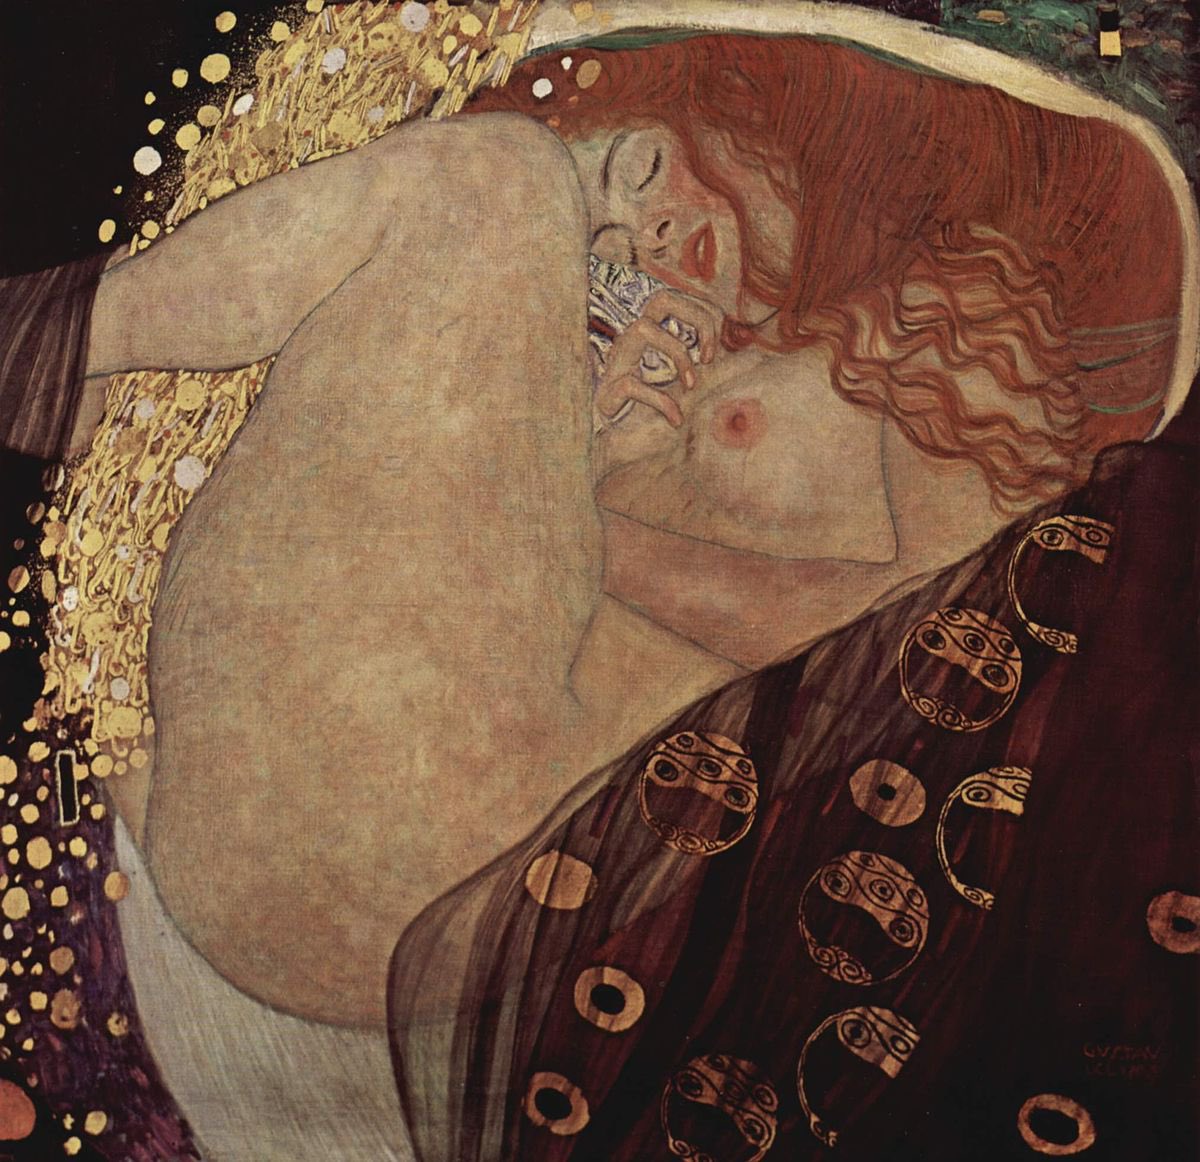 8. Danaë, Gustav Klimt, 1907